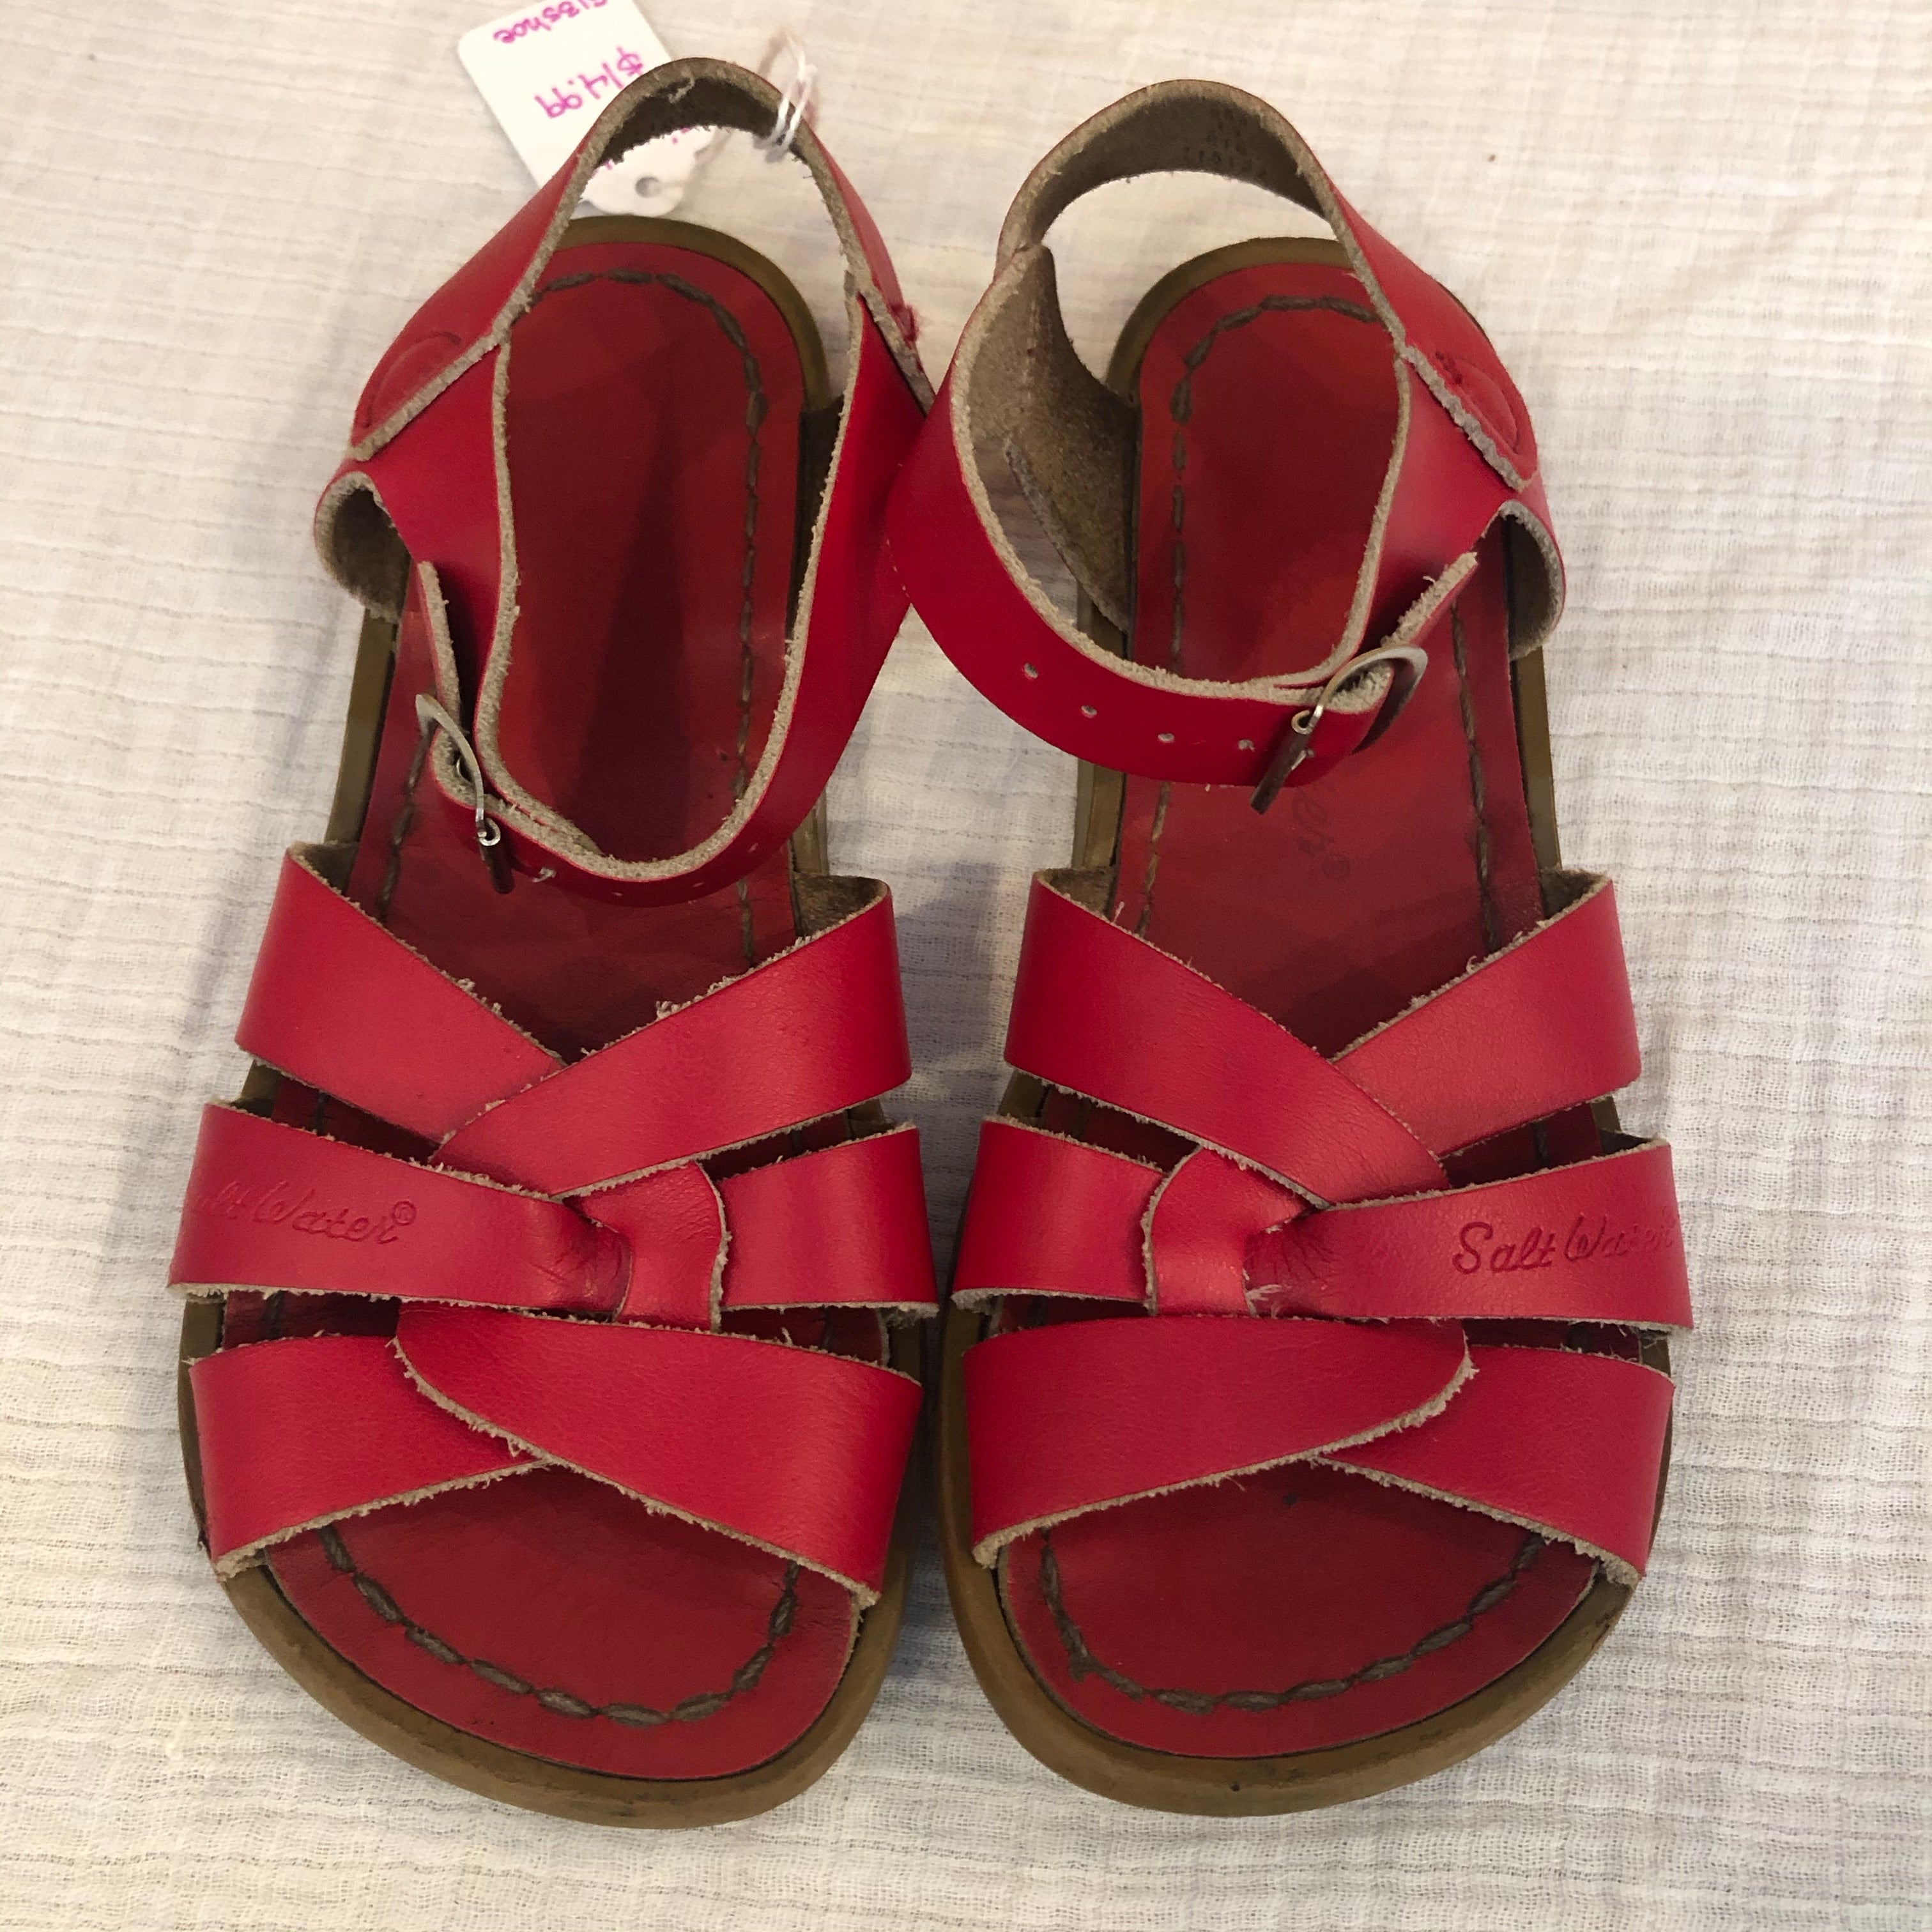 Size 13 Salt Water Sandals